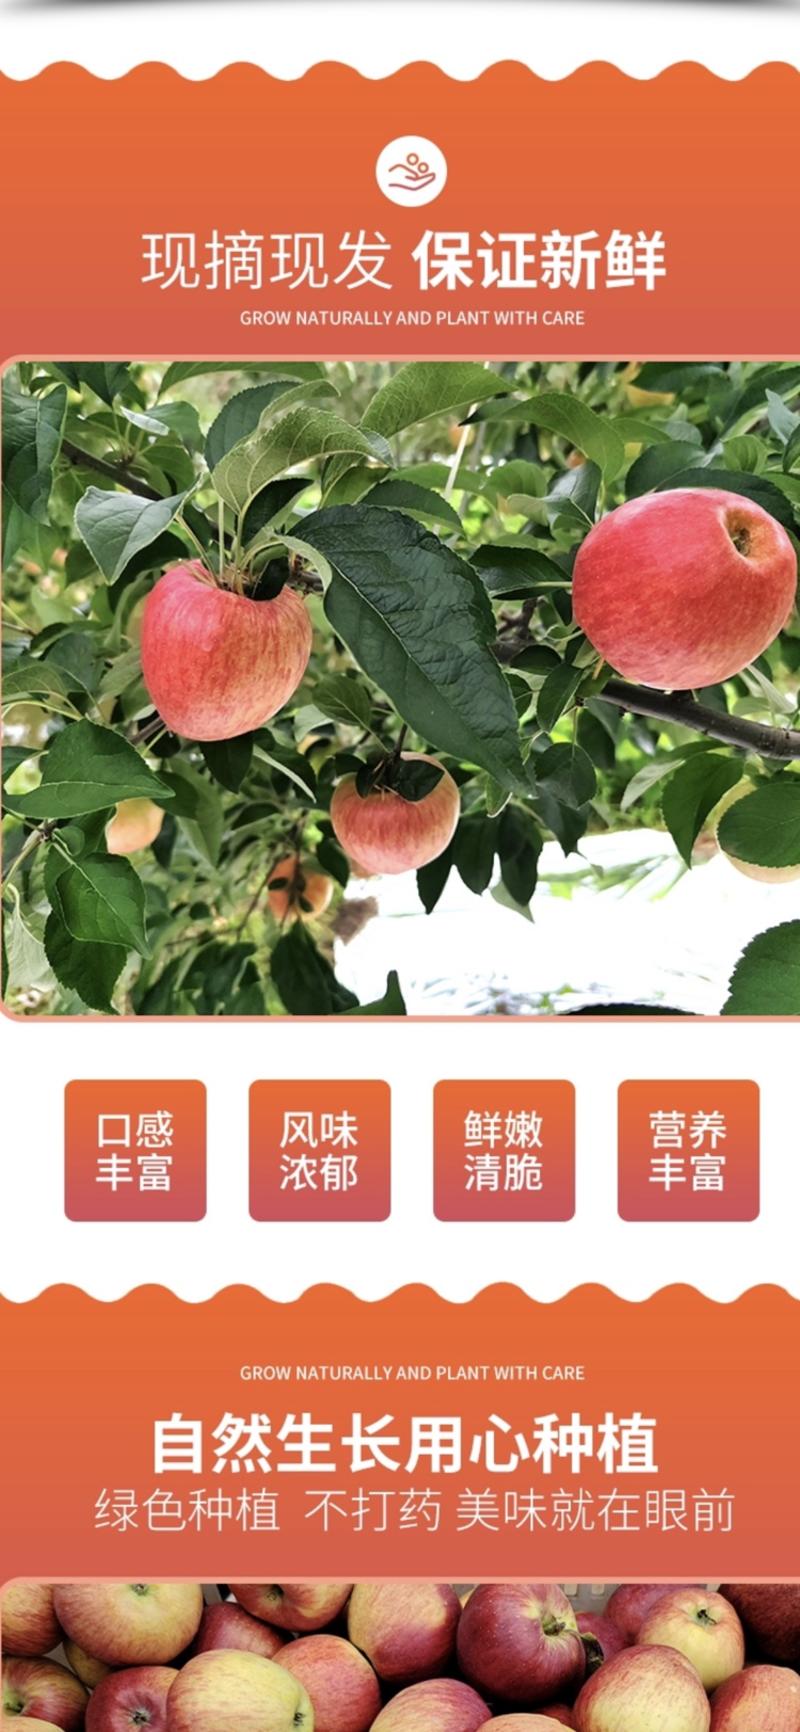 【一件代发】云南昭通红露苹果产地发货欢迎致电